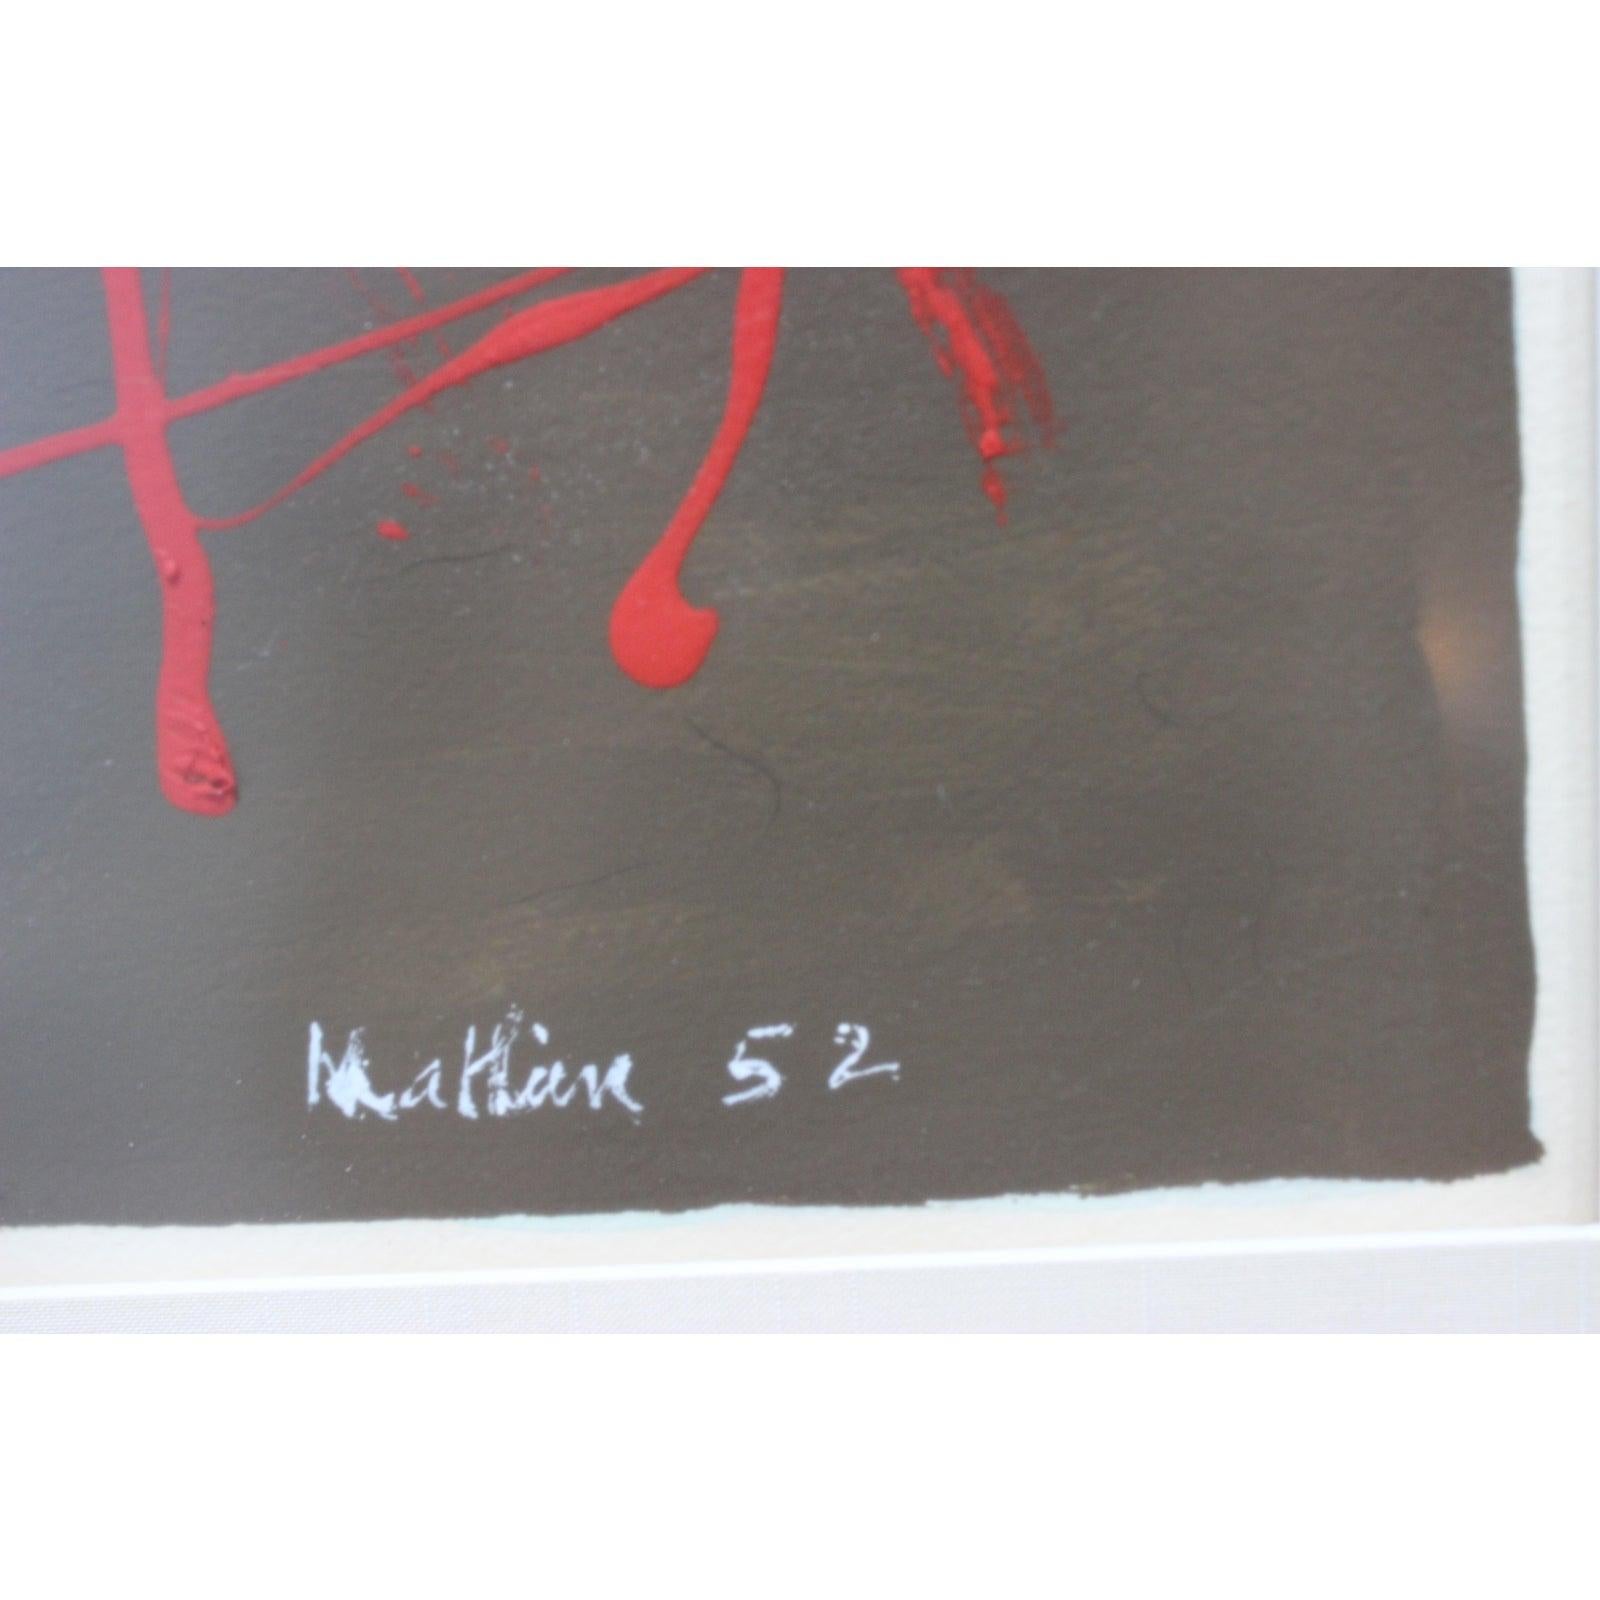 Georges Mathieu Tube Drip Abstrakt 1952 Tachismus Gemälde auf Papier Signiert von Französisch aufgelistet Künstler 1921-2012. Bei diesem Gemälde handelt es sich um ein frühes 